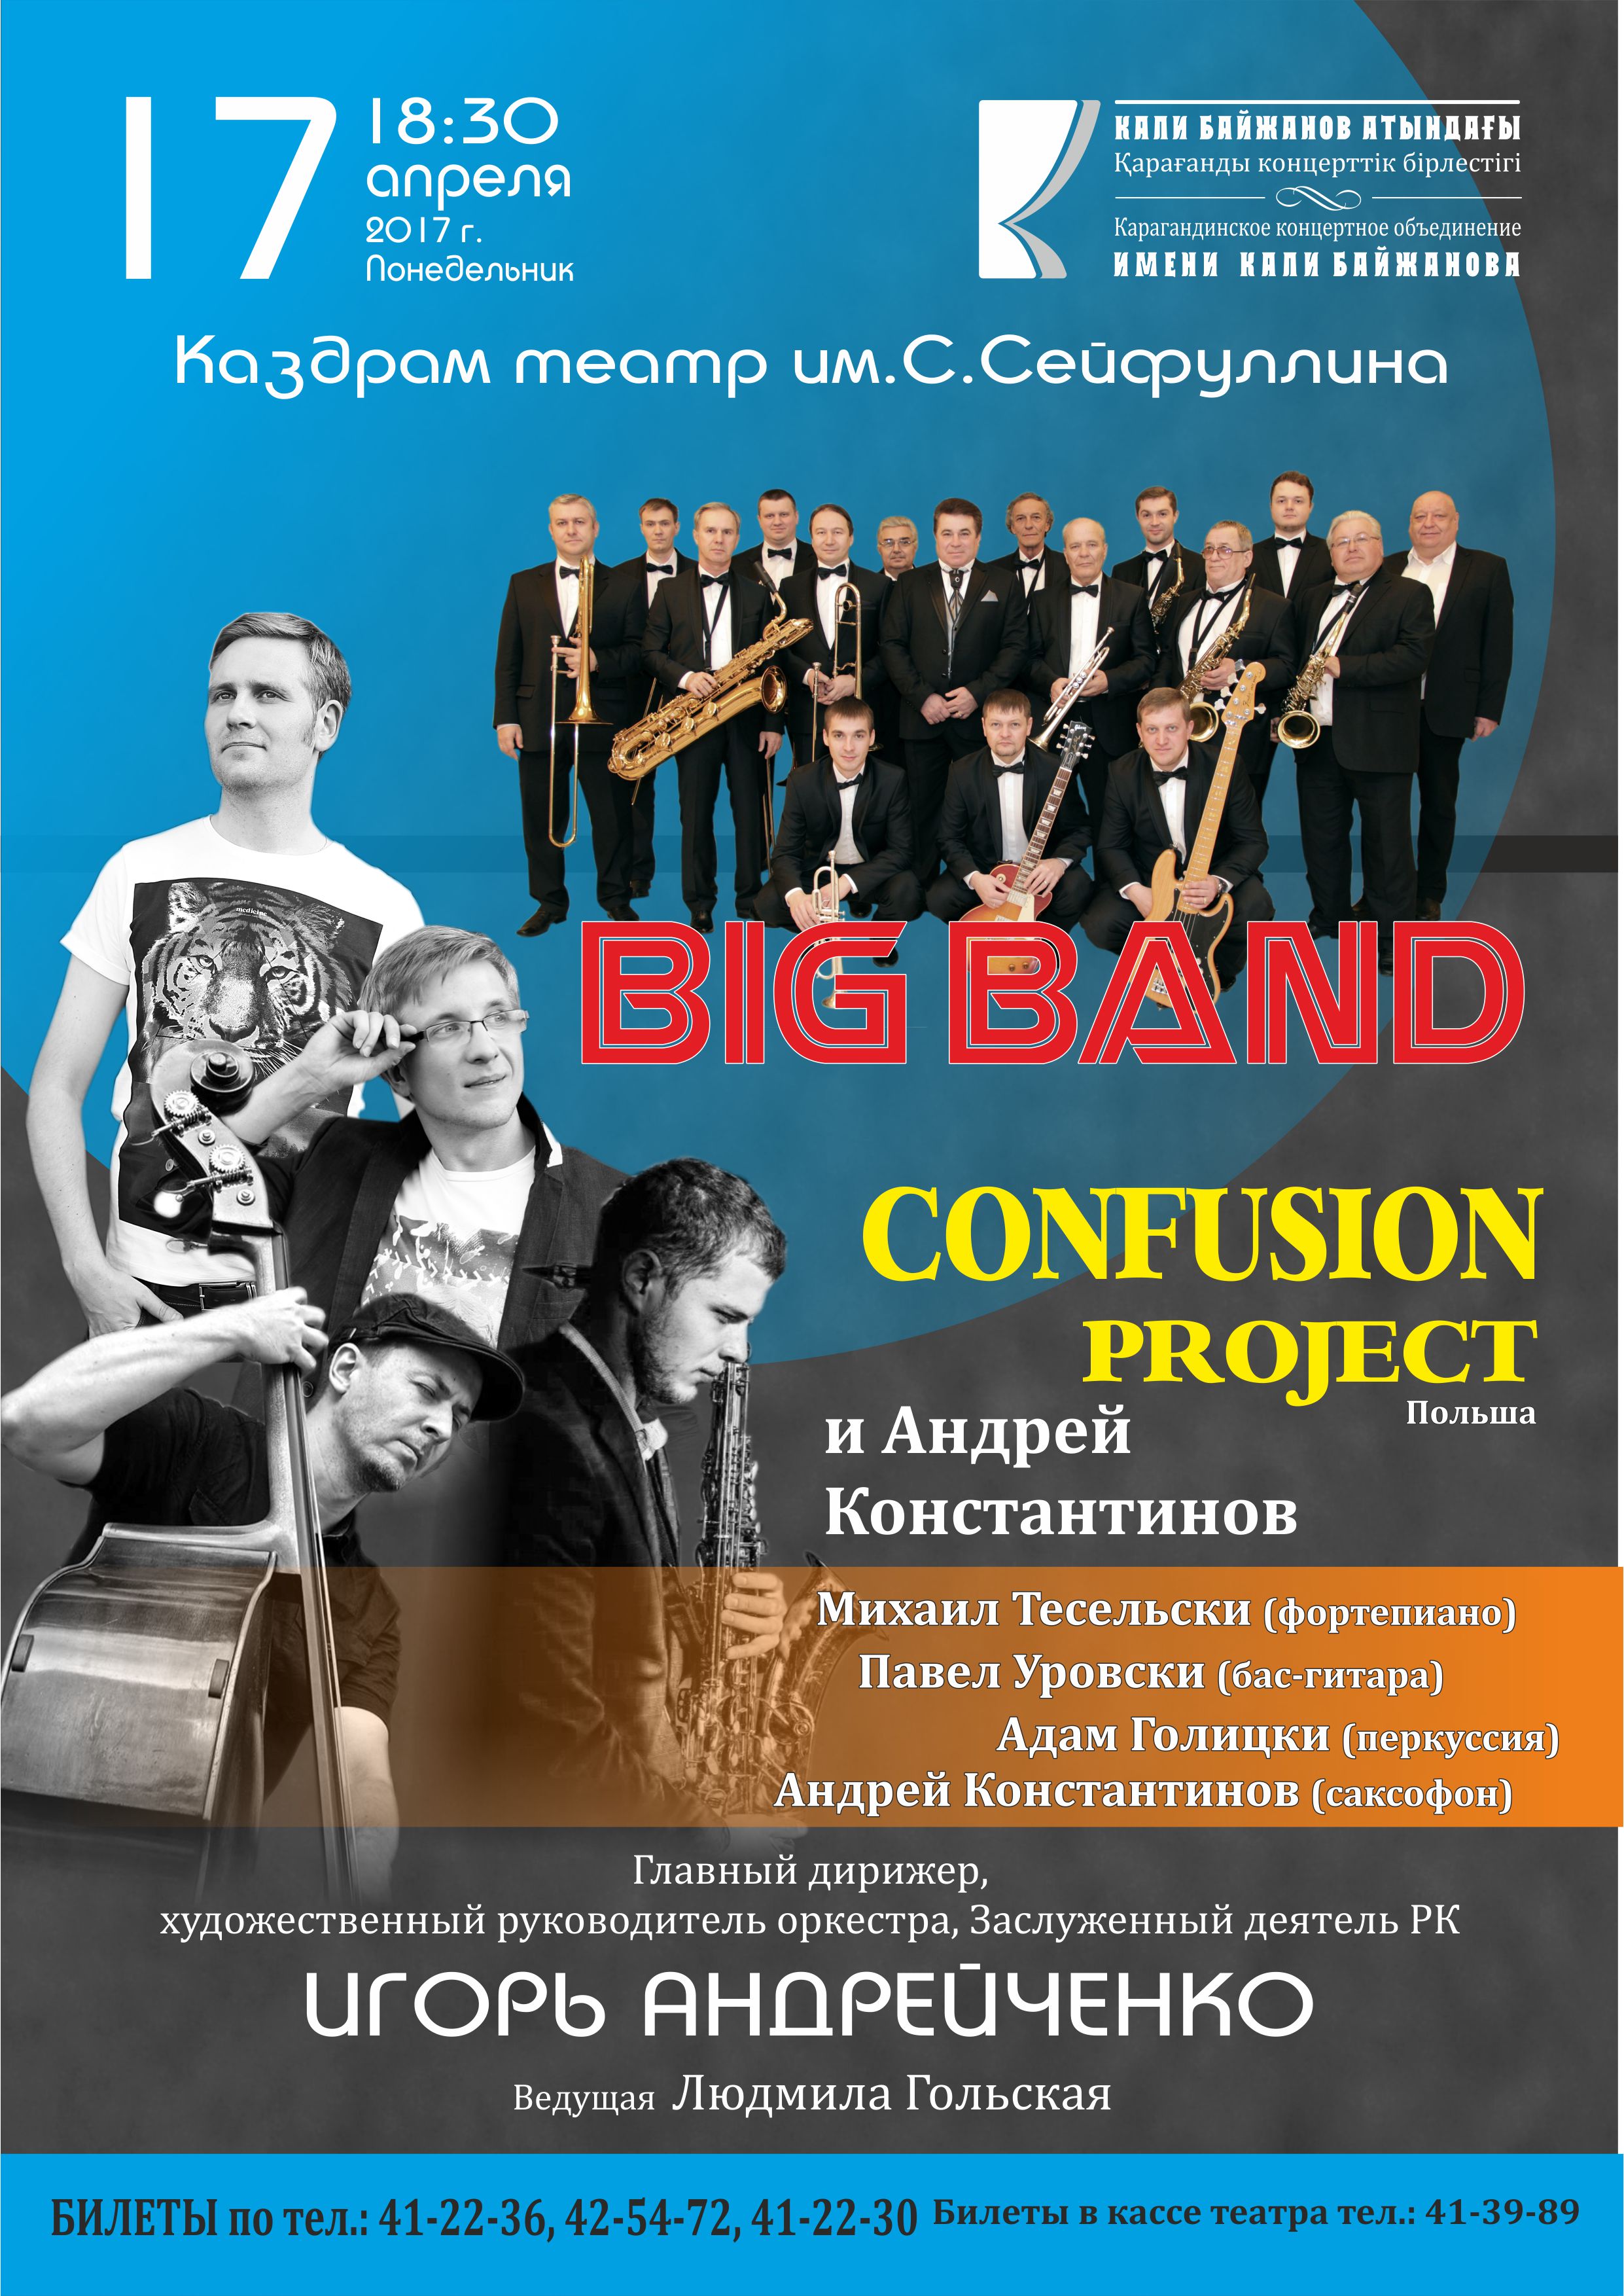 Концерт Big Band Confusion project и Андрея Константинова 17.04.17